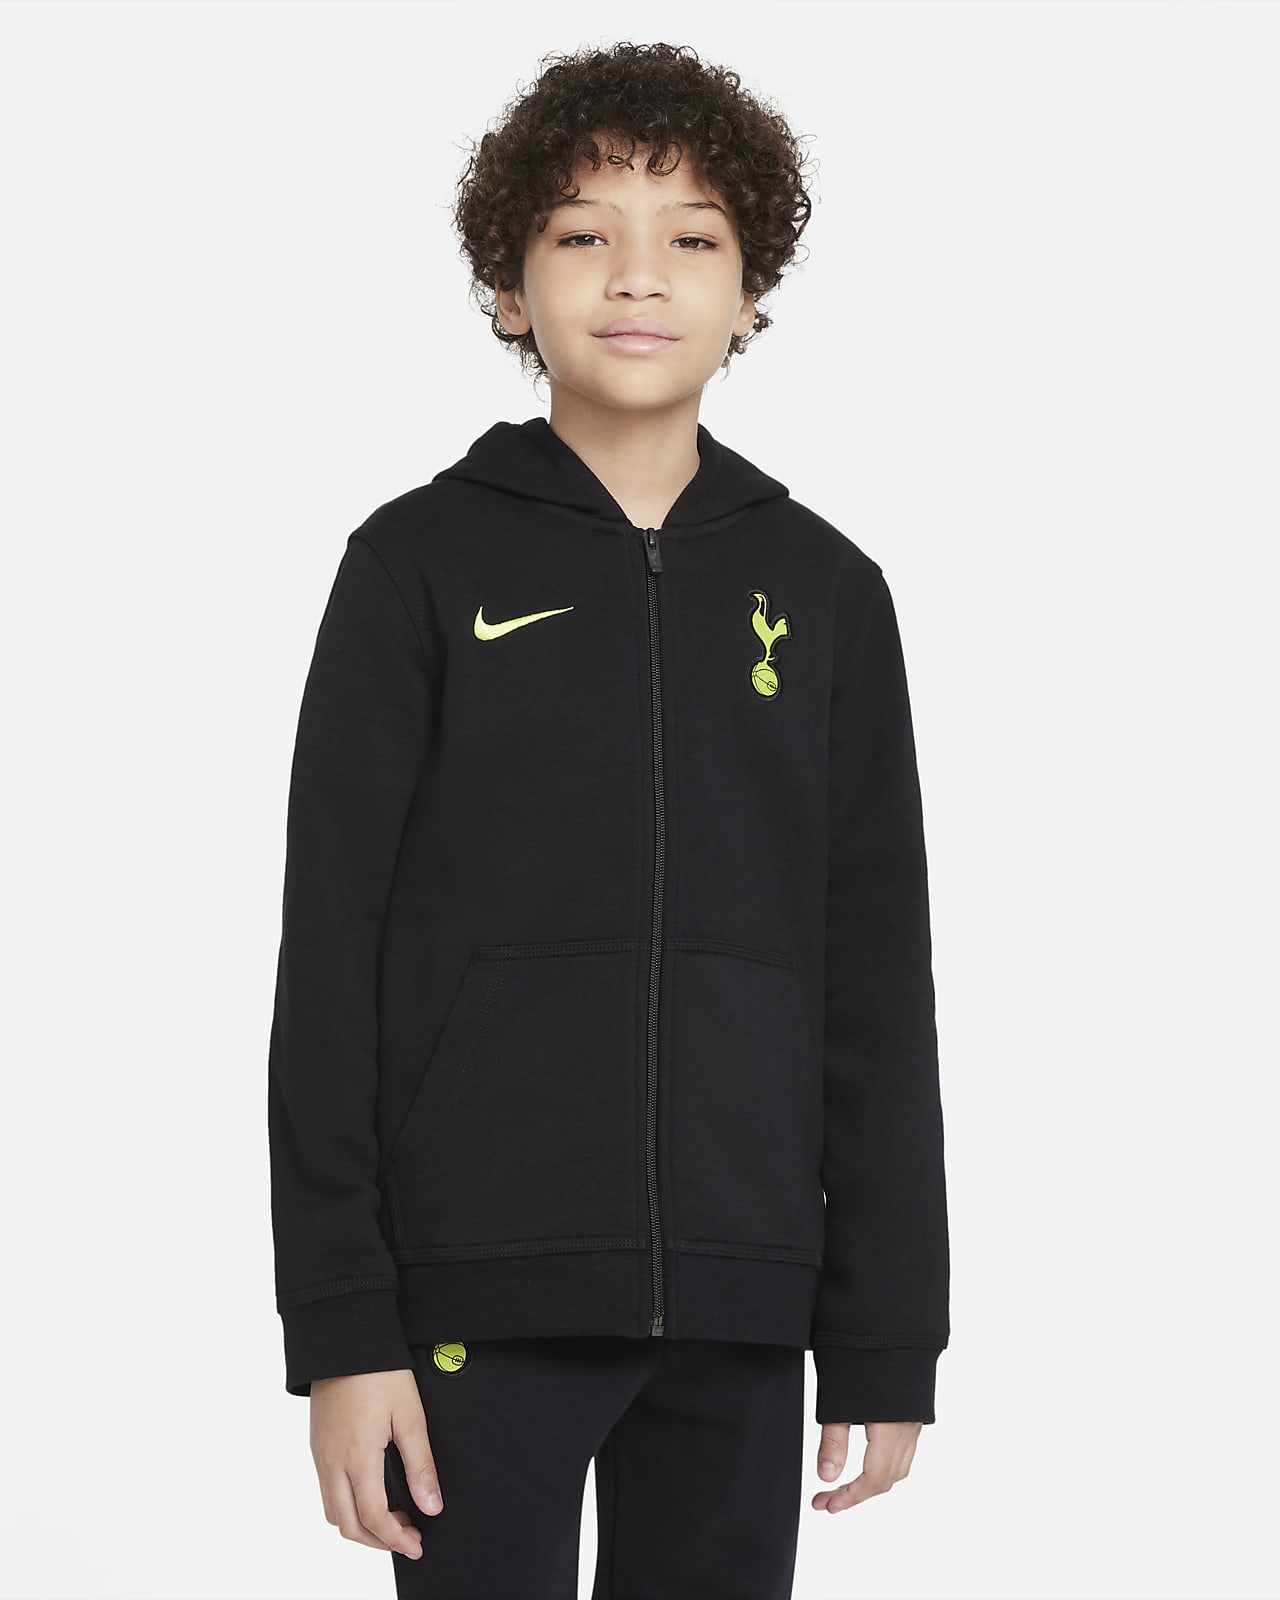 Tottenham Hotspur Older Kids' Full-Zip Fleece Hoodie